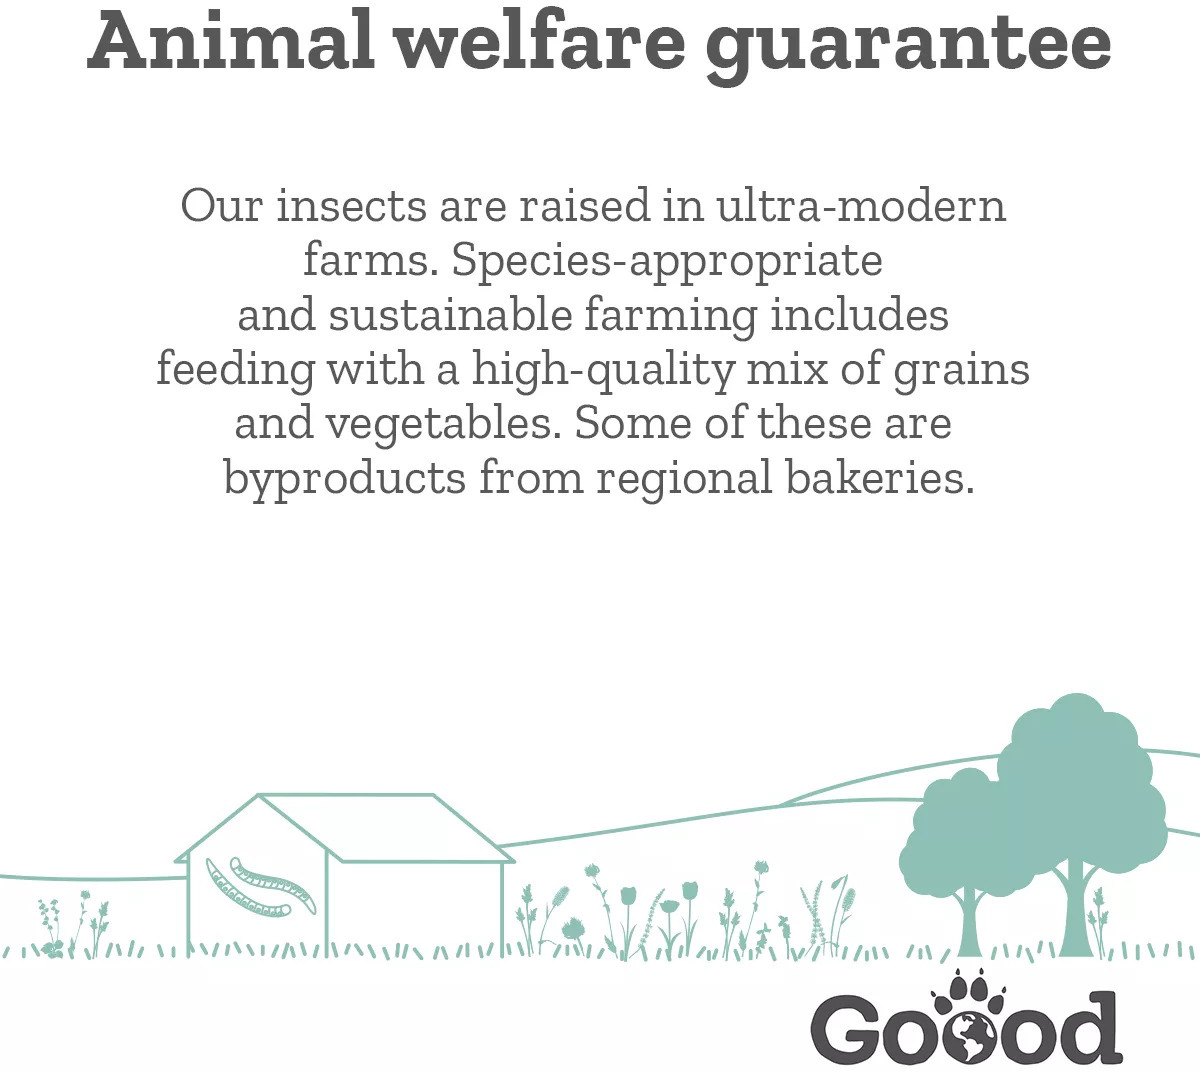 Goood Sensitive Adult Insekten hrană pentru câini cu proteine de insecte, păstârnac și pătrunjel - zoom